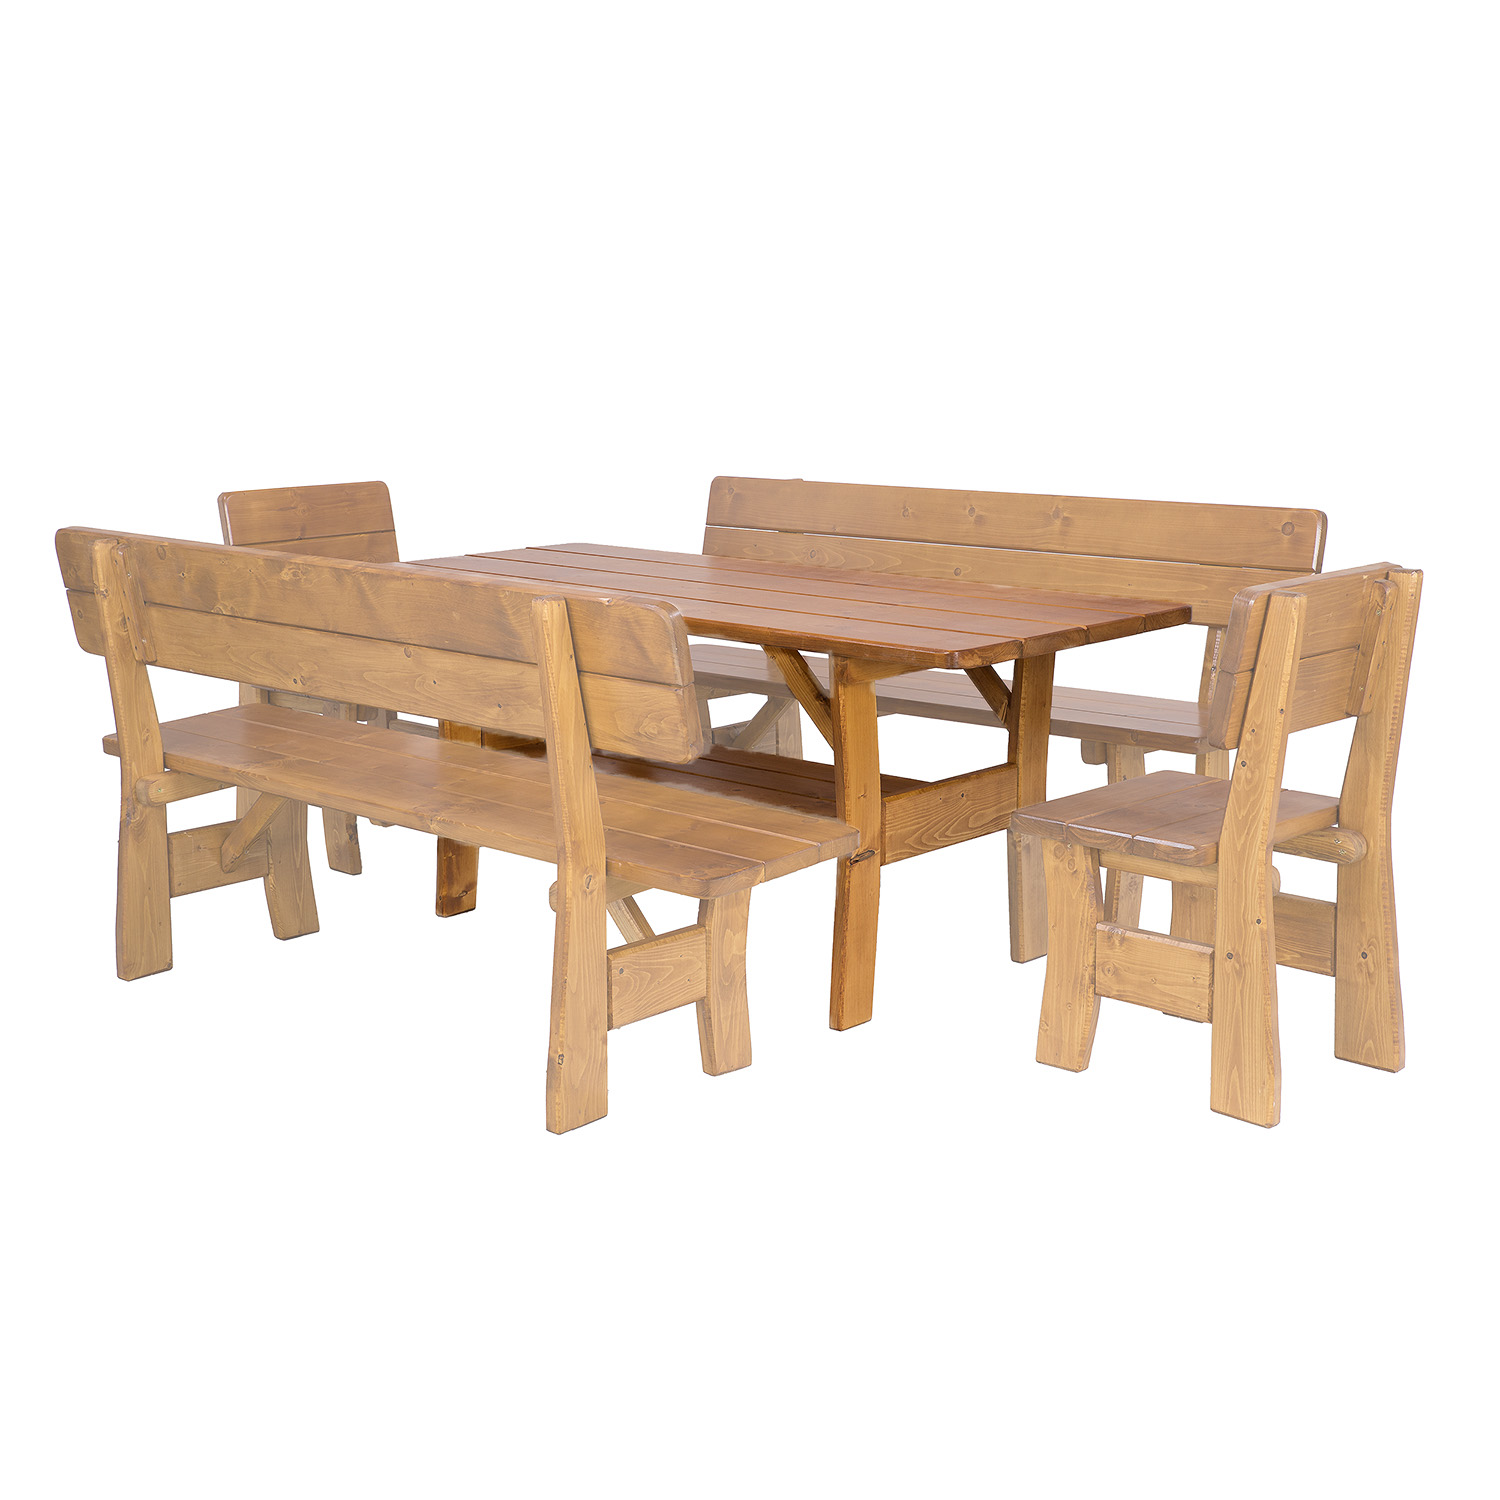 HUGO - zahradní stůl ze smrkového dřeva, lakovaný 180x81x80cm - Dub lak